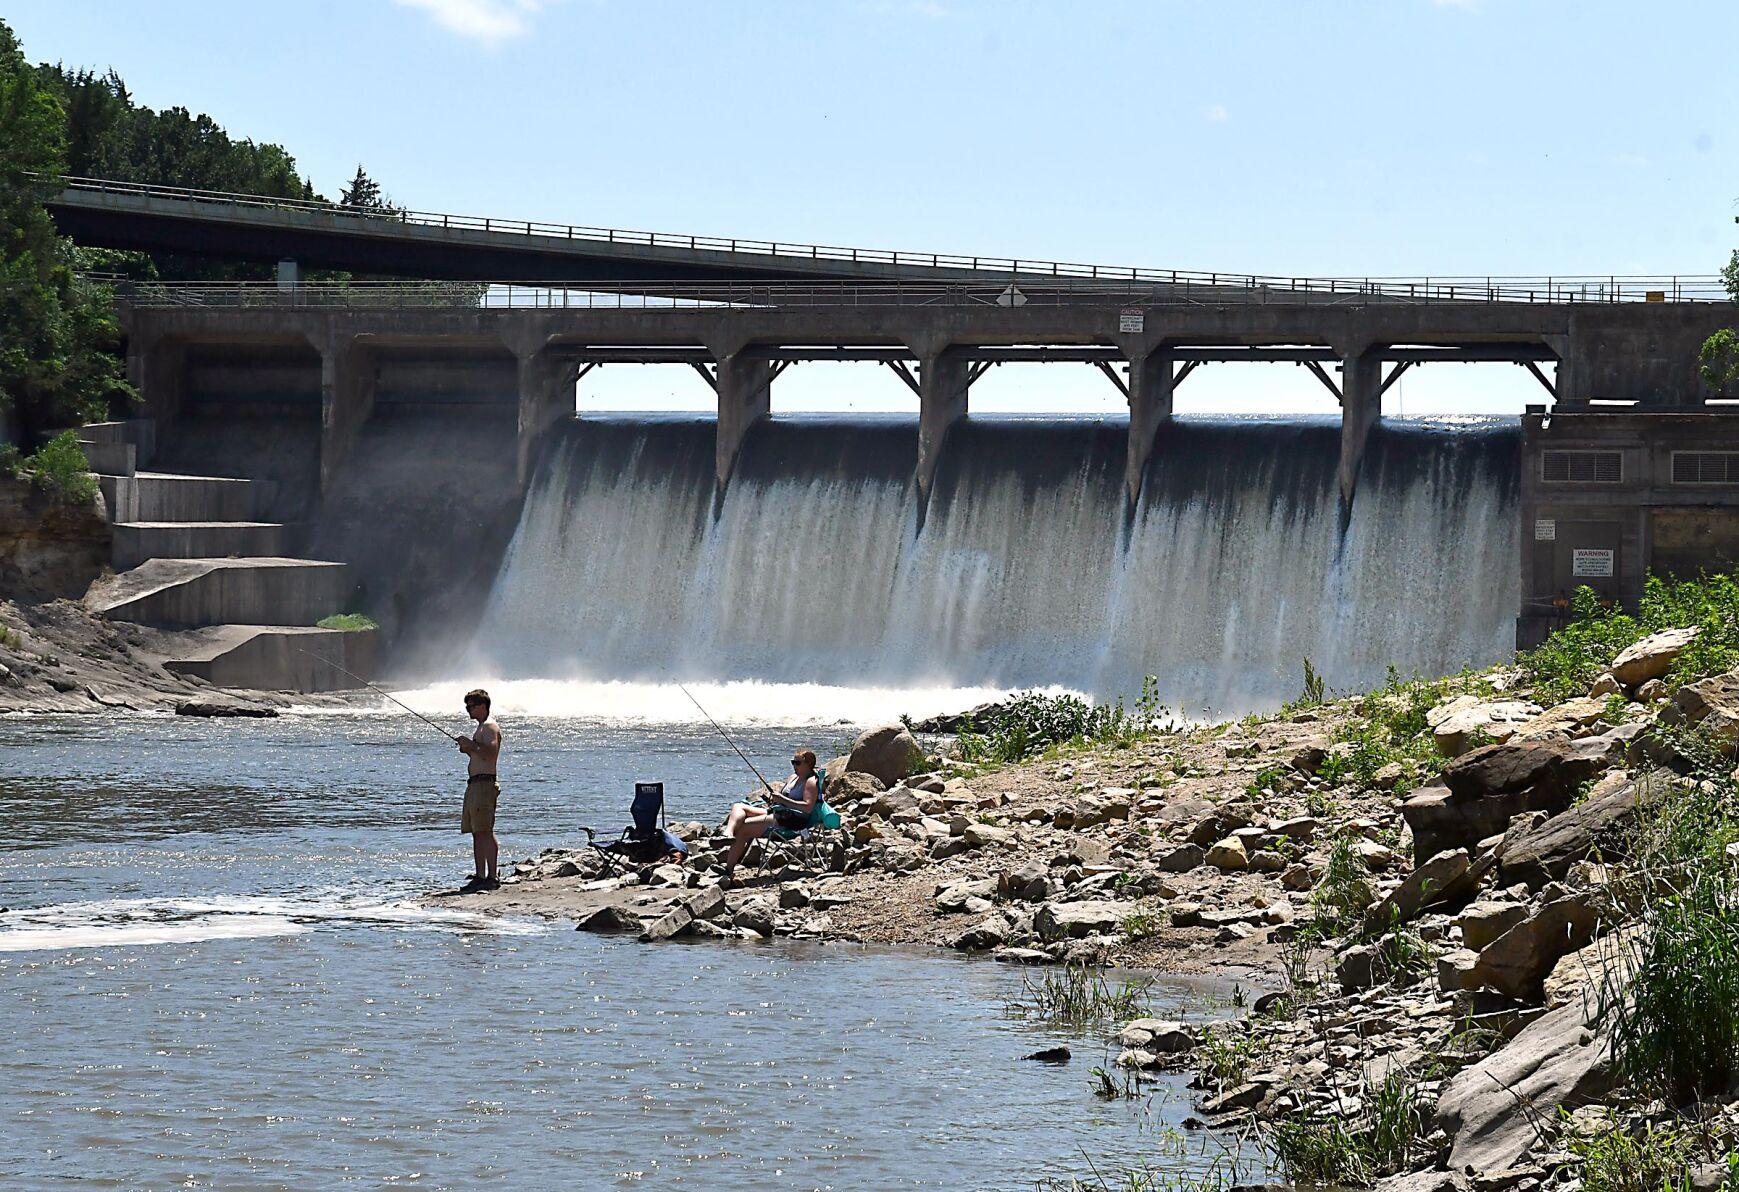 DAM DILEMMA Future of Rapidan Dam hangs in air as county analyzes